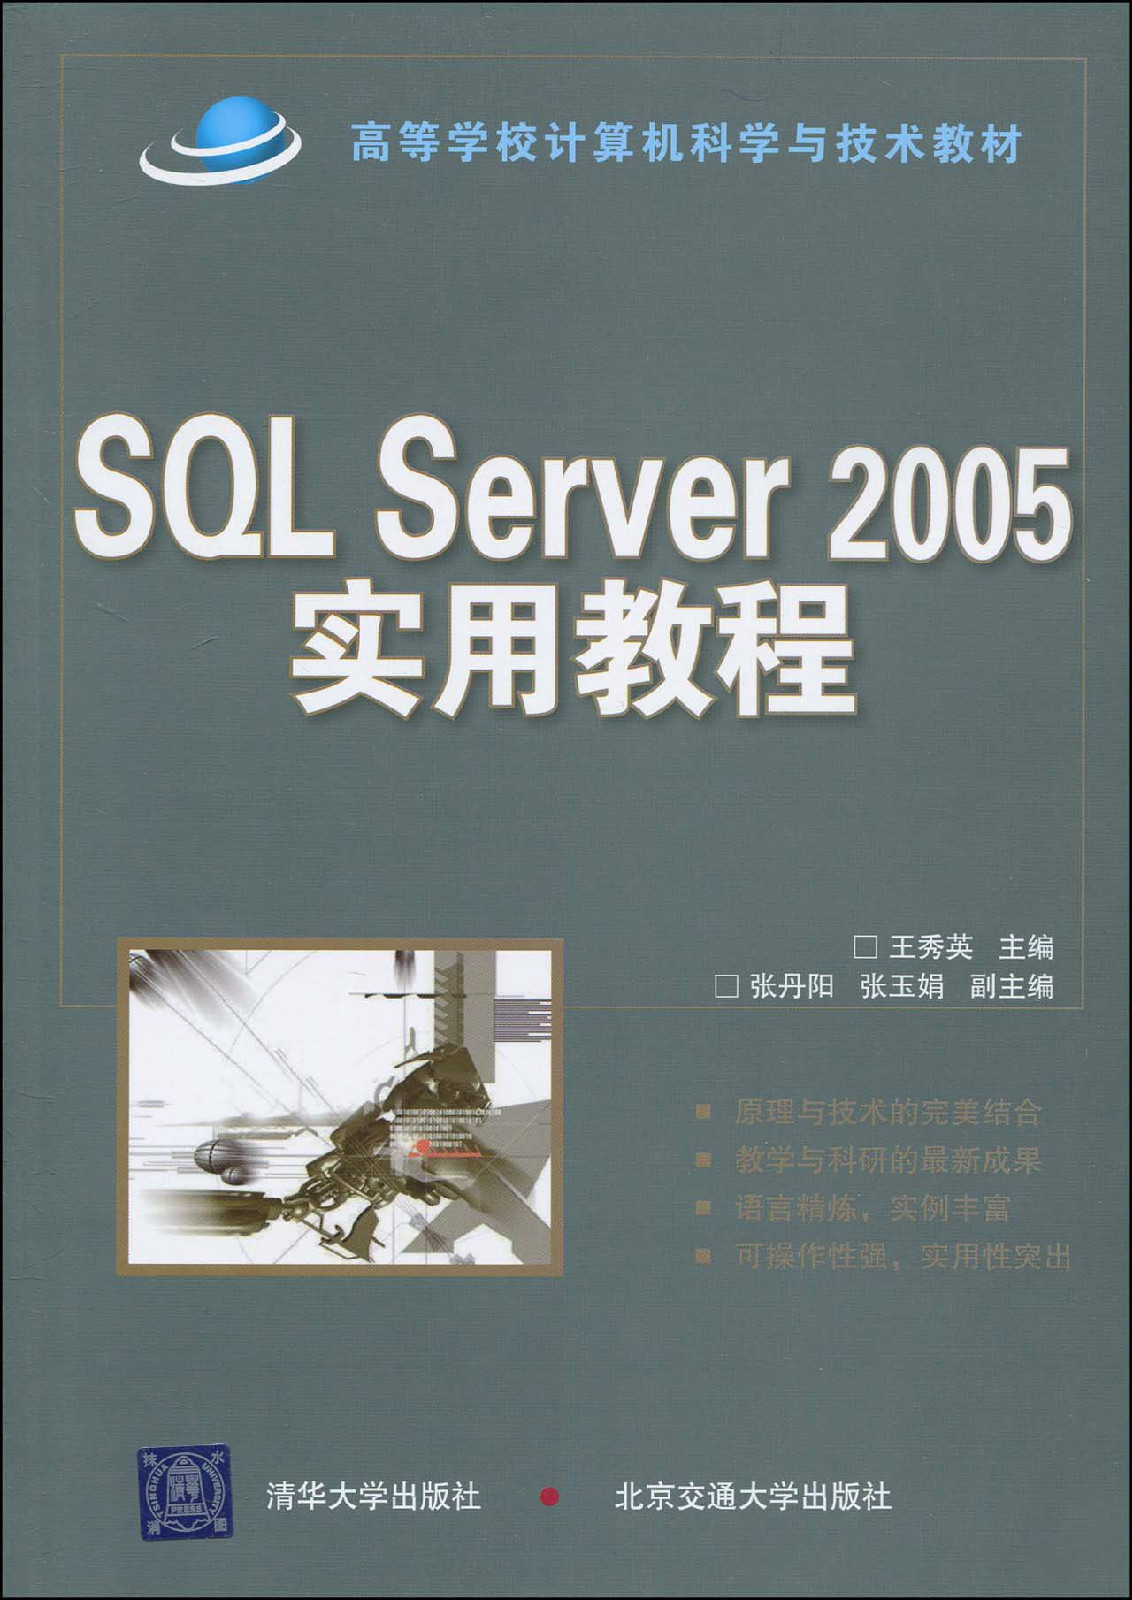 SQLServer2005實用教程(王秀英著2010年圖書)